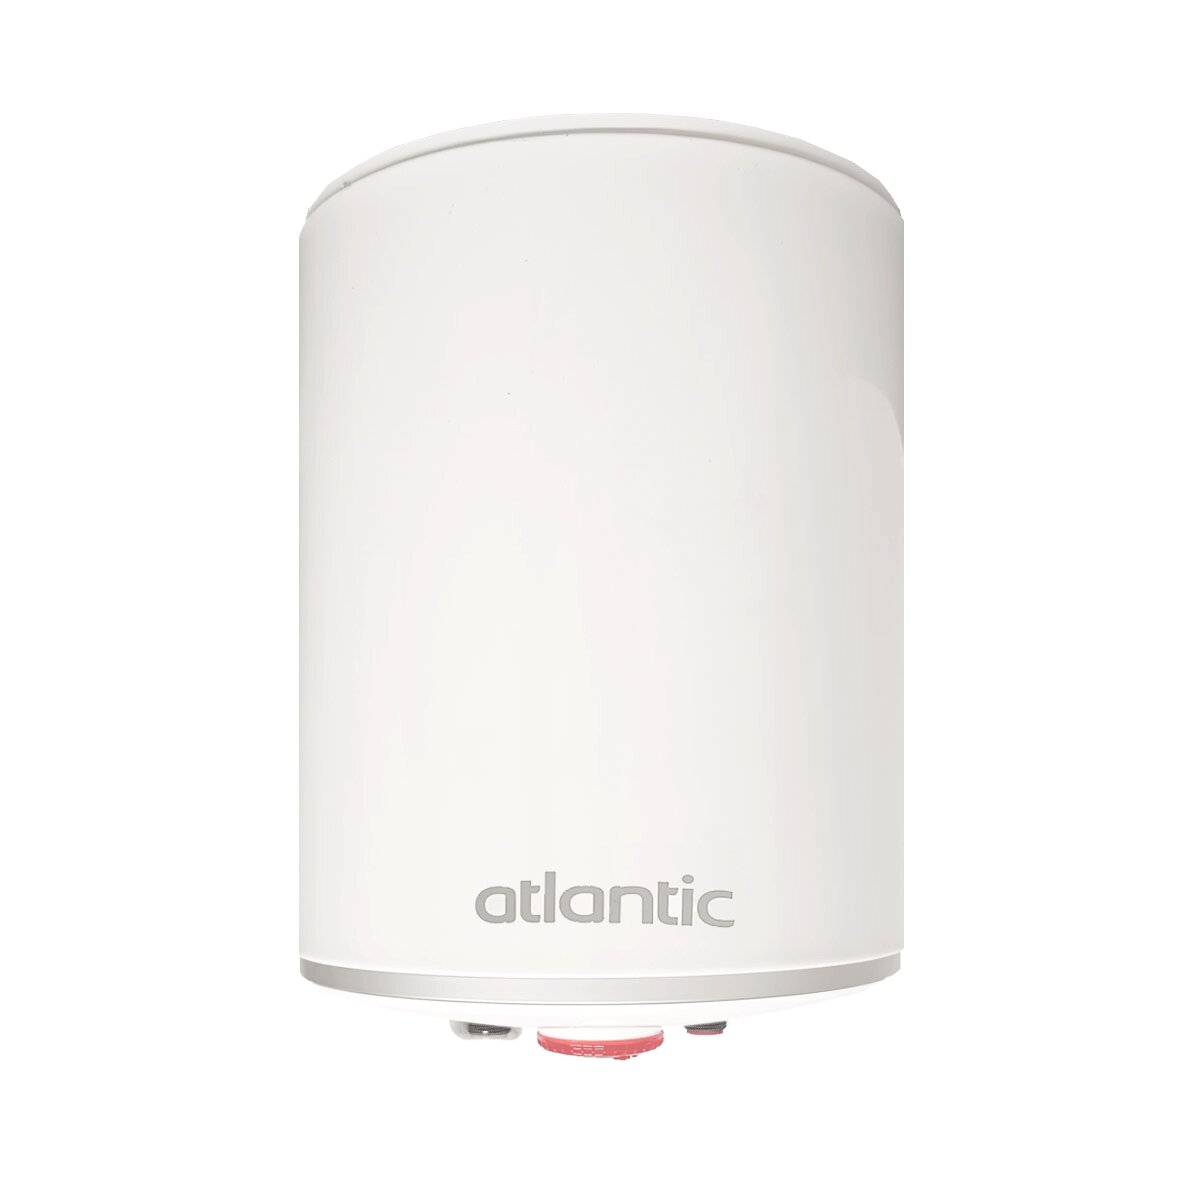 EGO Atlantic 15 Liter Schnell-Übertisch-Elektro-Warmwasserbereiter, 2 Jahre Garantie